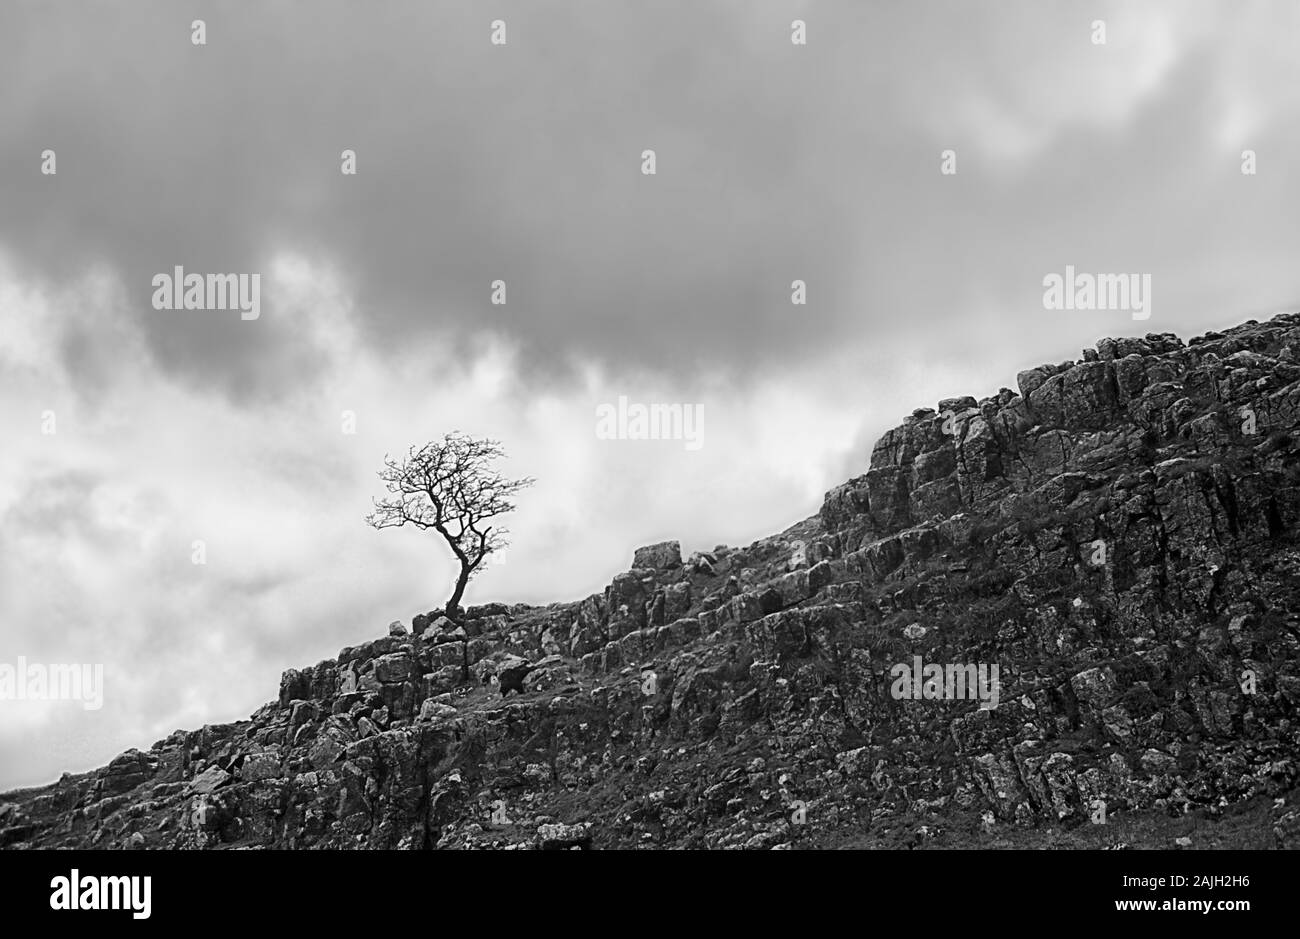 Un seul, windswept rowan tree (Sorbus aucuparia) au-dessus de Malham Cove dans Watlowes, vallée du Yorkshire, England, UK. Vieux film en noir et blanc photographie, vers 1992 Banque D'Images